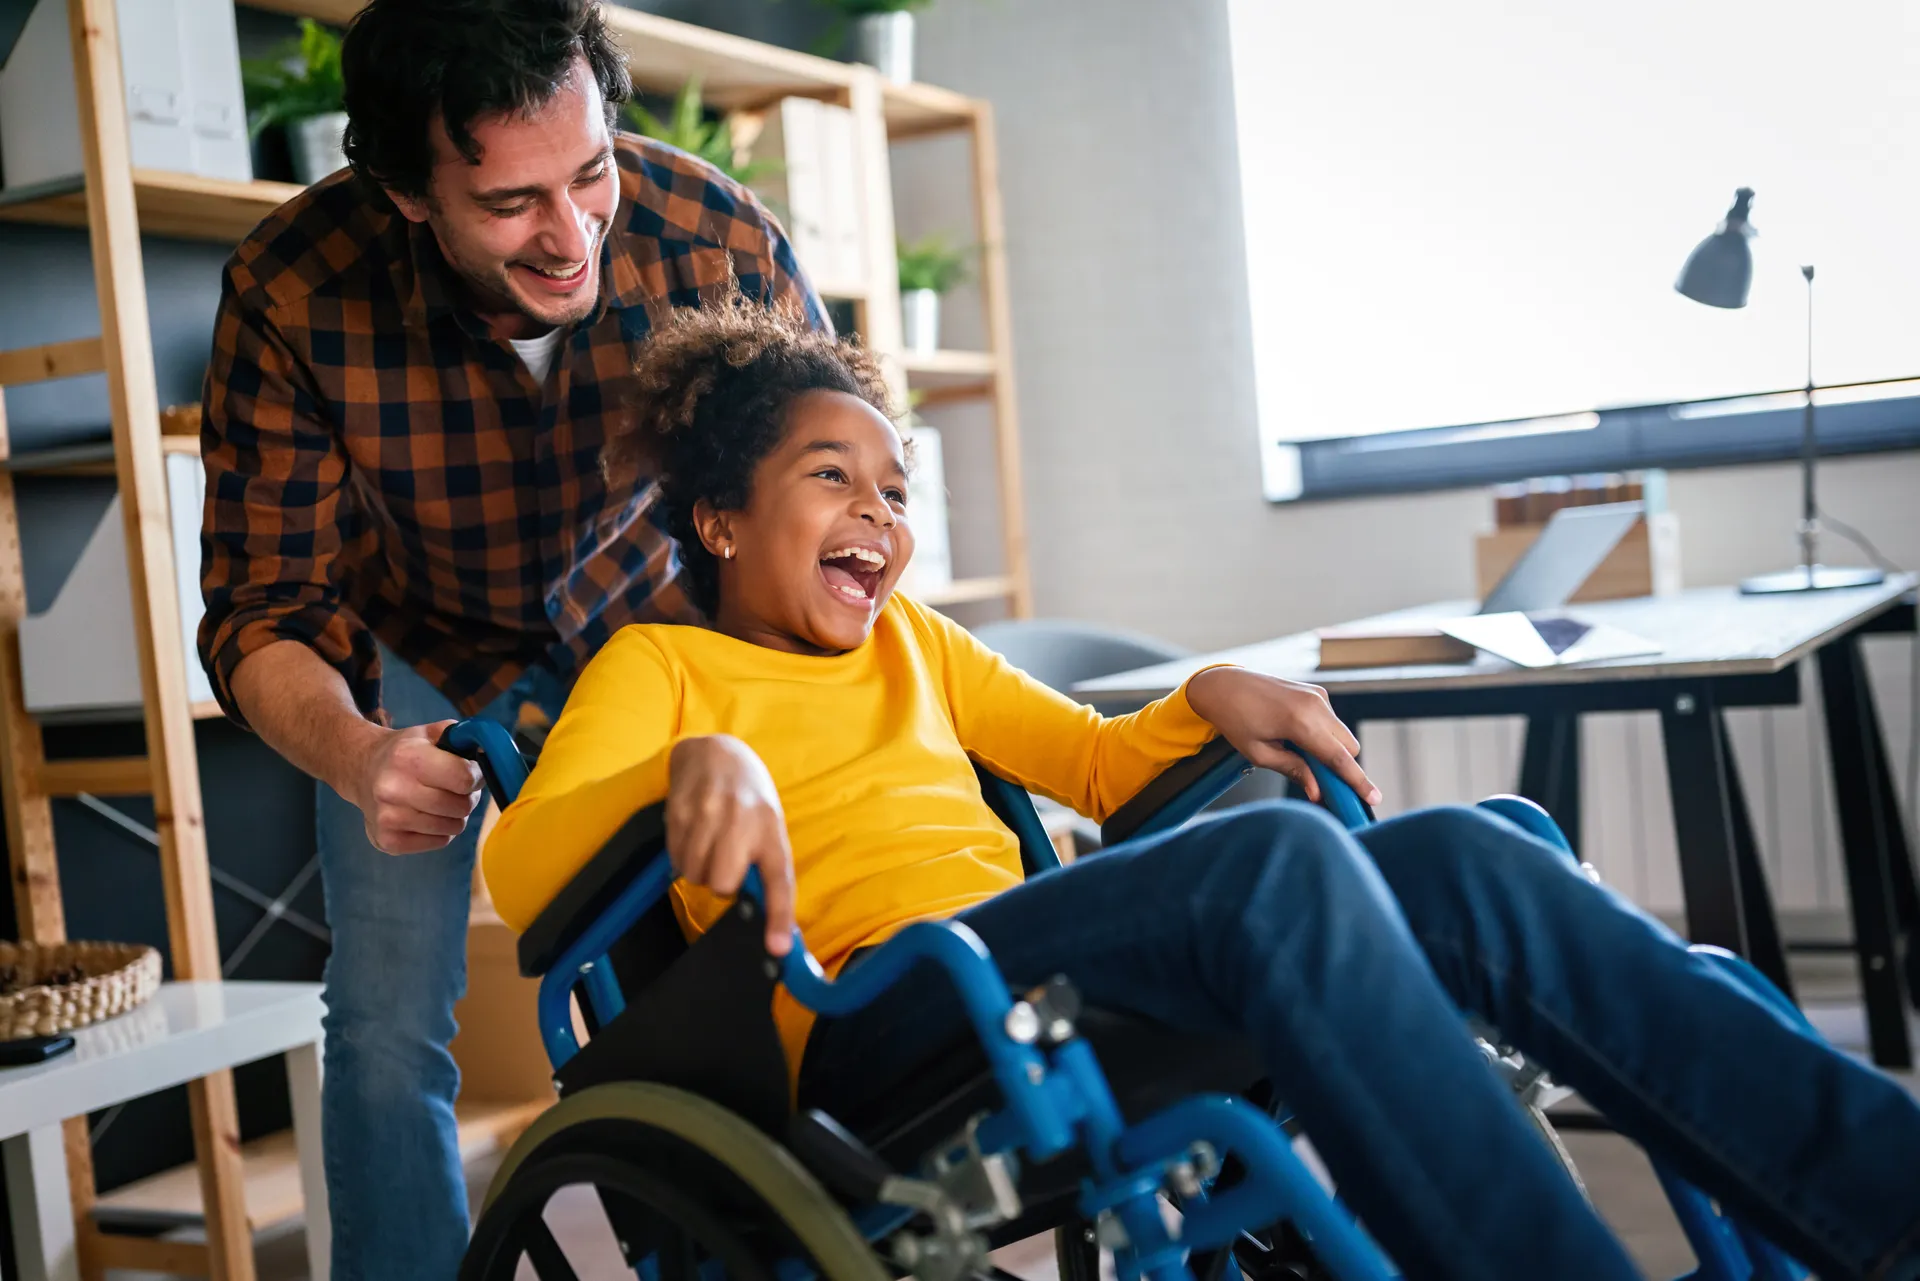 On peut voir un homme qui pousse un enfant en fauteuil roulant. L’homme semble rire et l’enfant affiche un large sourire.